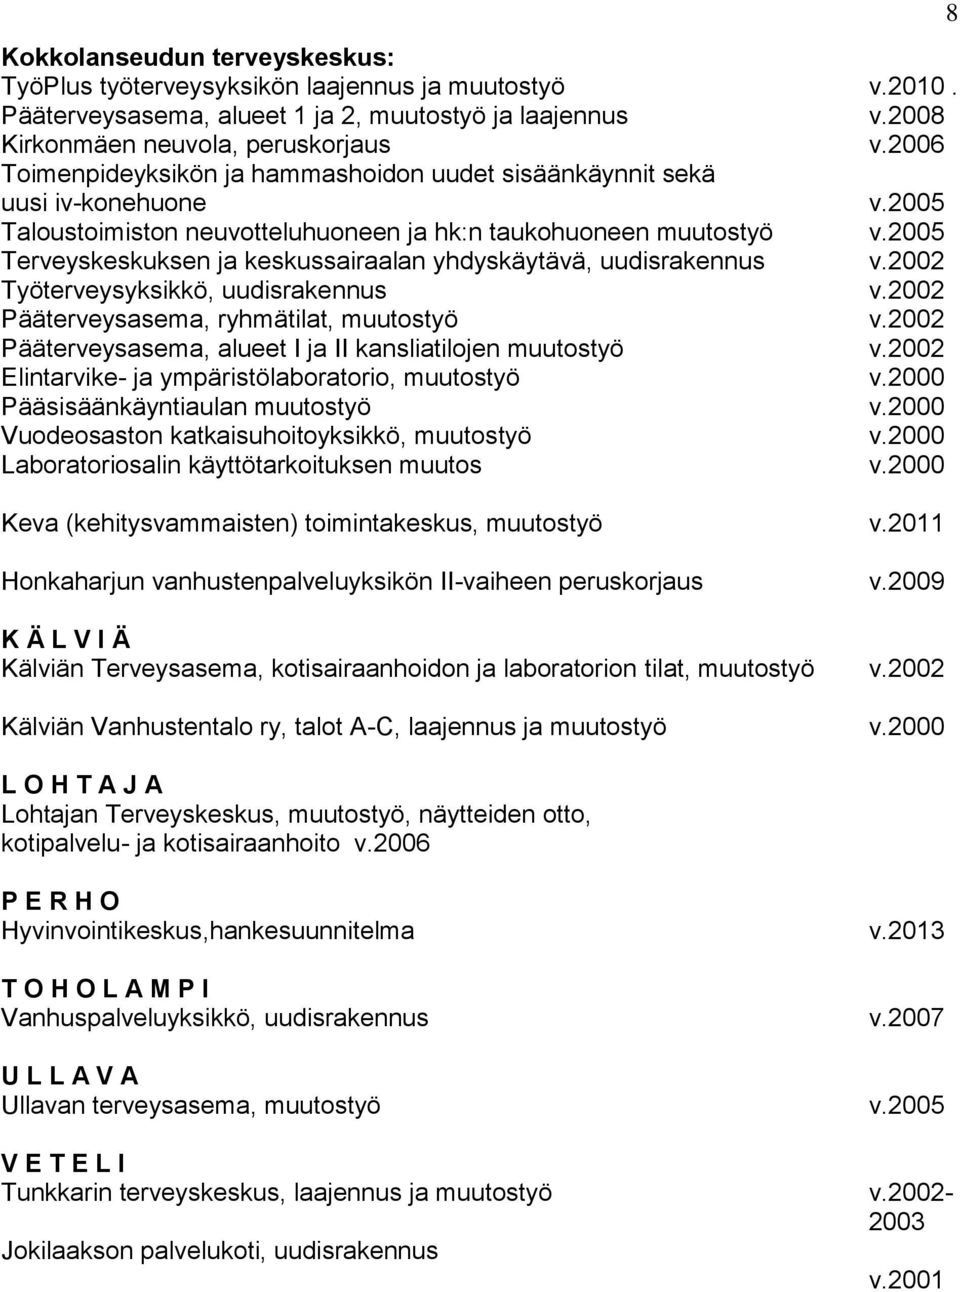 2005 Terveyskeskuksen ja keskussairaalan yhdyskäytävä, uudisrakennus v.2002 Työterveysyksikkö, uudisrakennus v.2002 Pääterveysasema, ryhmätilat, muutostyö v.